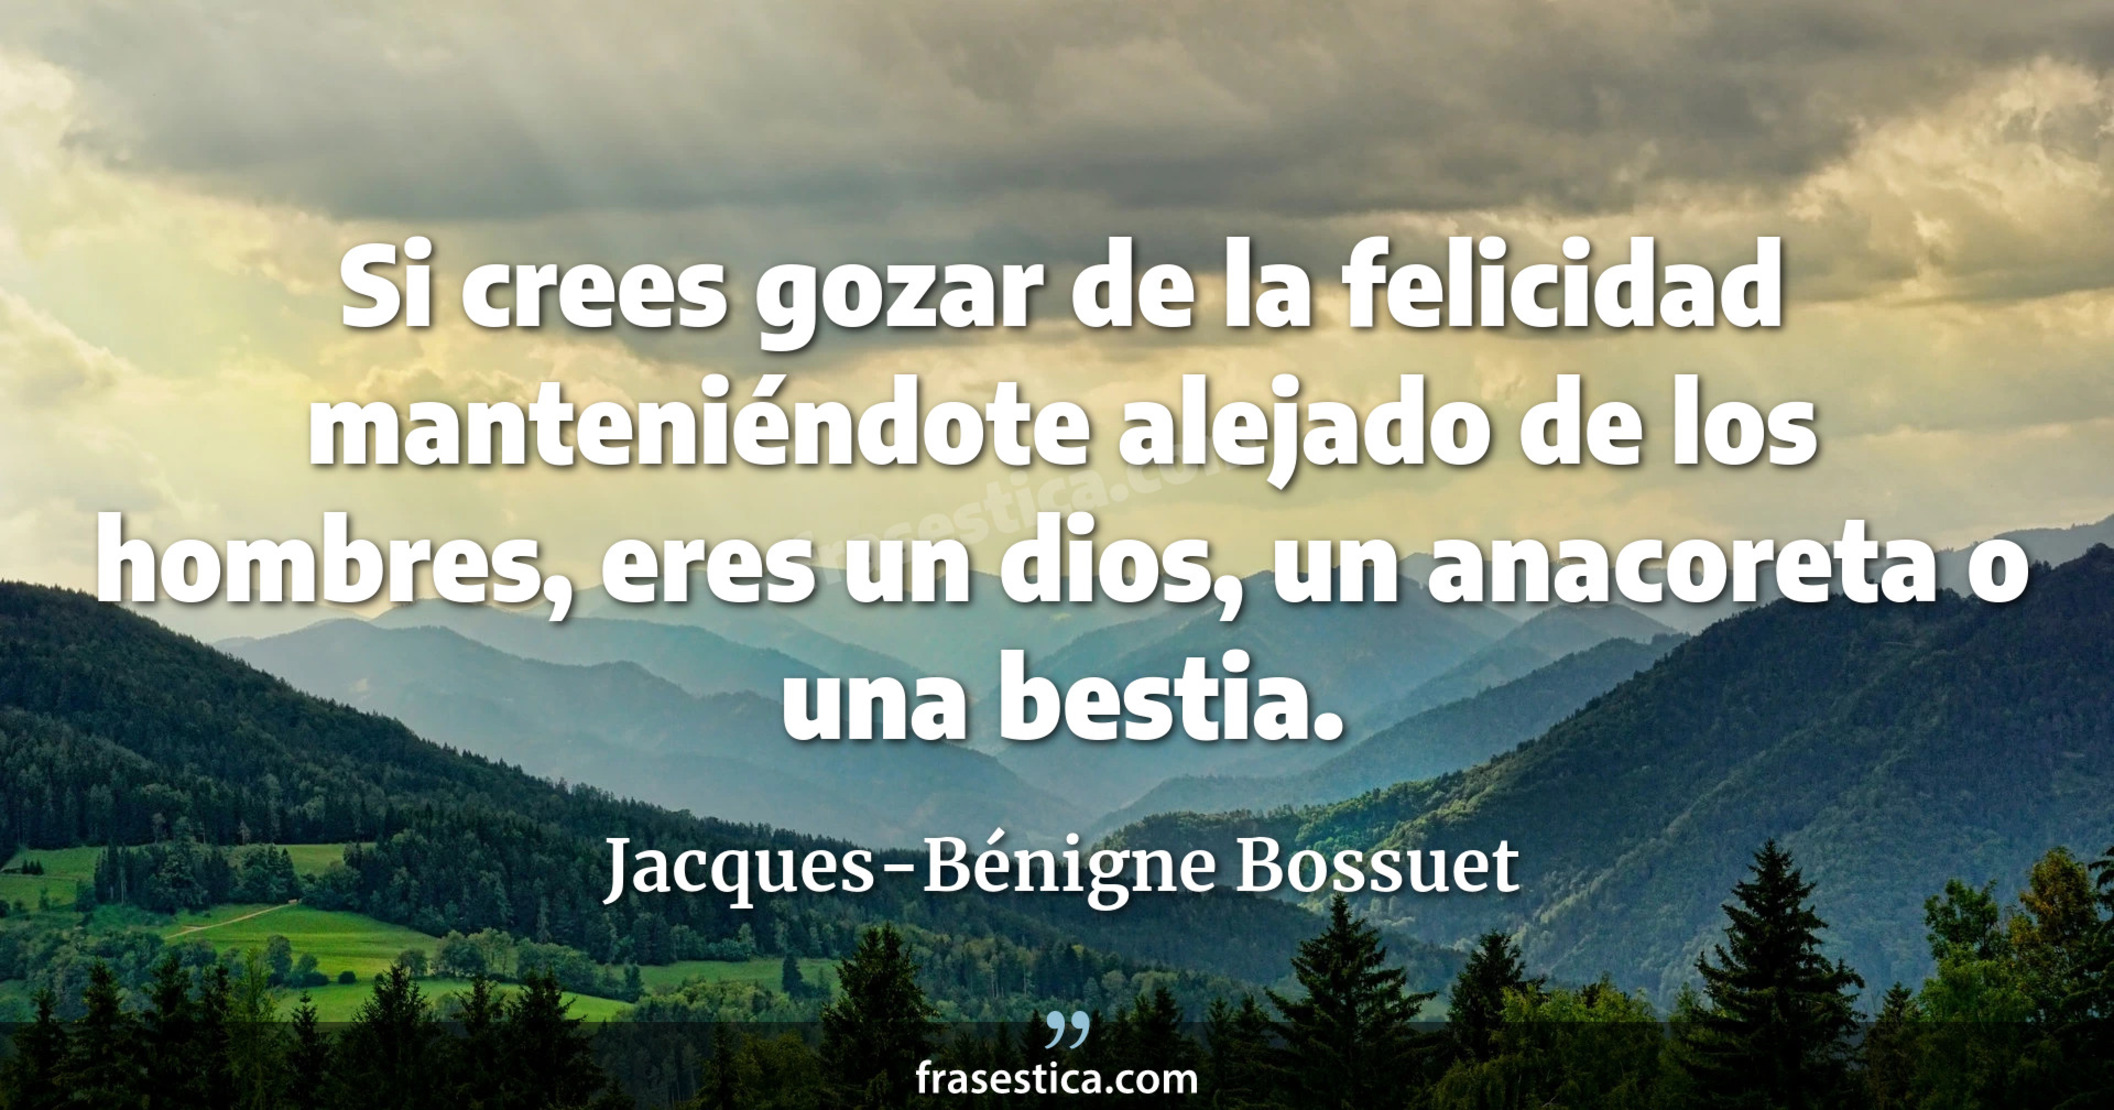 Si crees gozar de la felicidad manteniéndote alejado de los hombres, eres un dios, un anacoreta o una bestia. - Jacques-Bénigne Bossuet